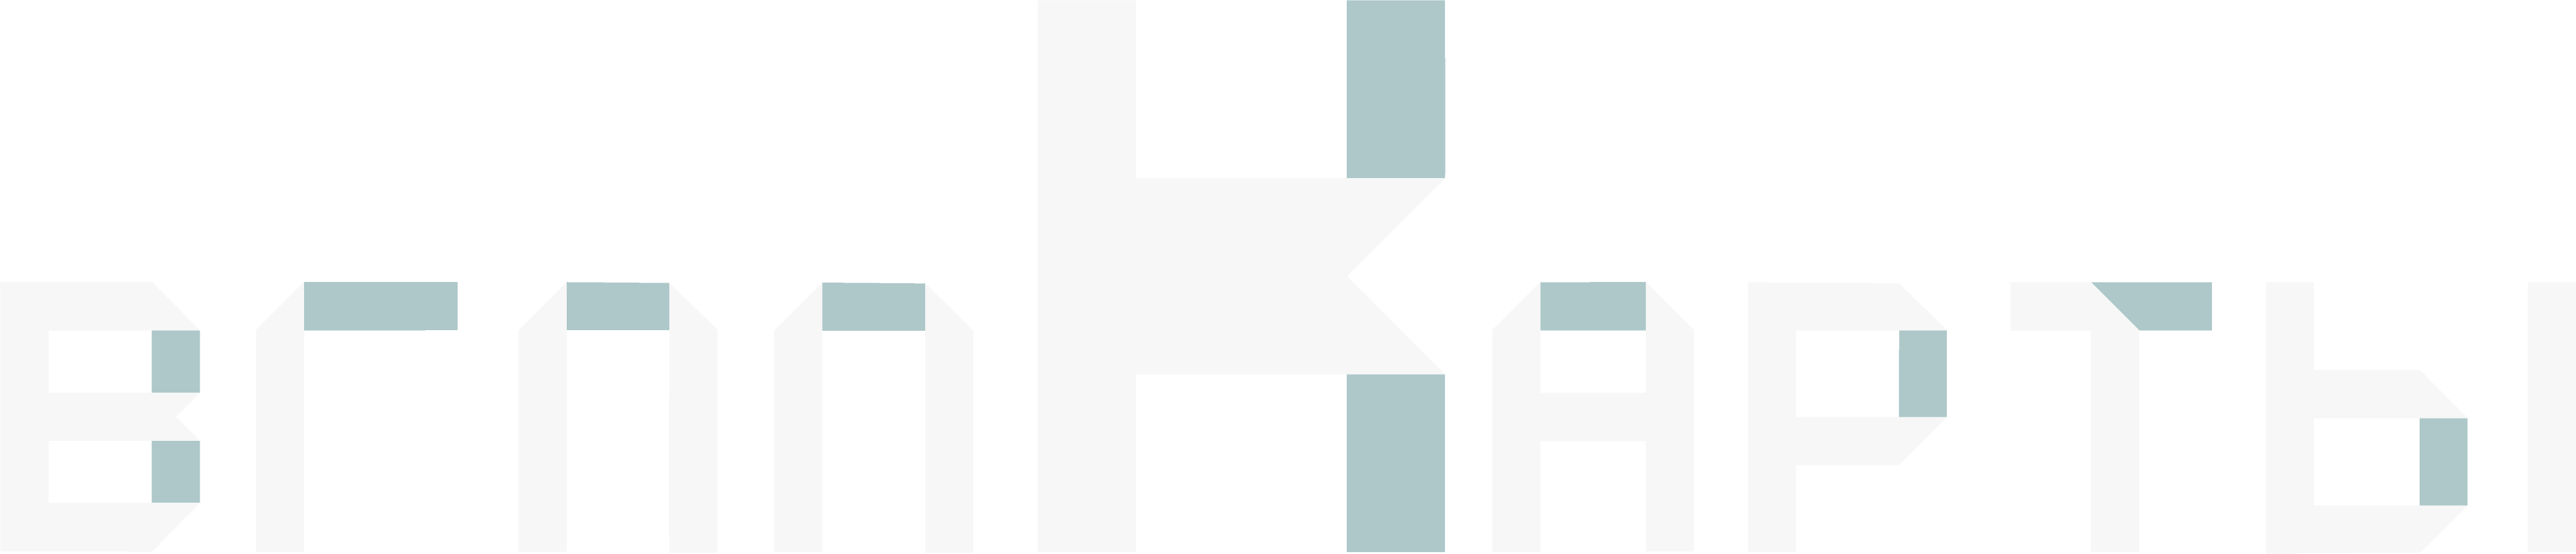 Логотип ВГППК КАРТЫ